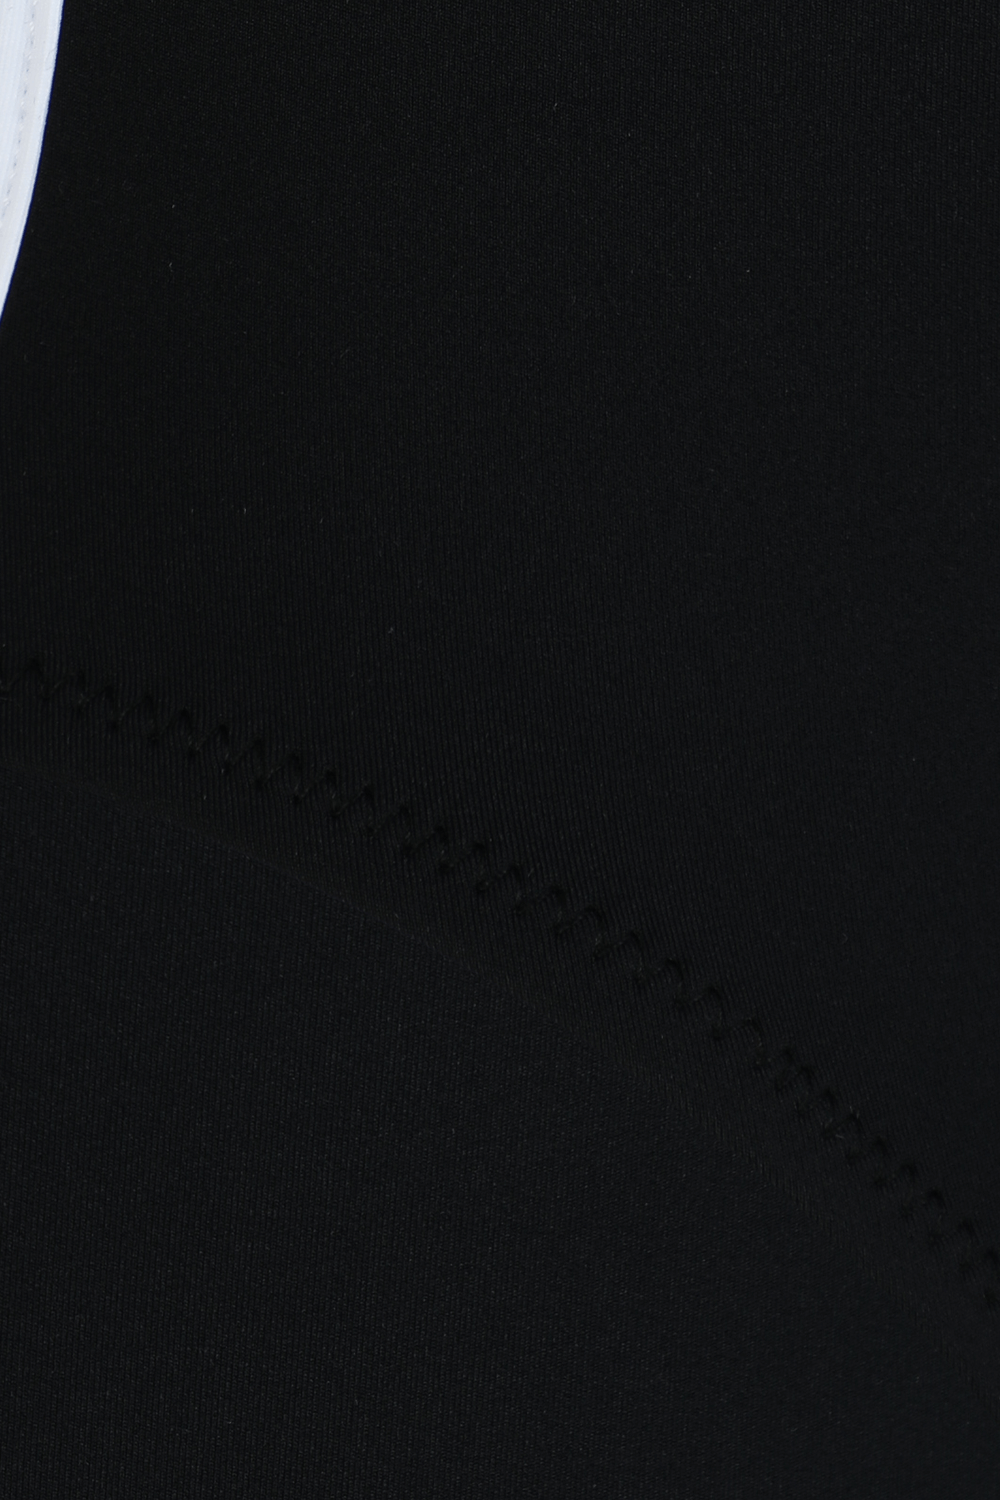 בגד ים שלם סקופ שחור עם גב פתוח TROPIC OF C